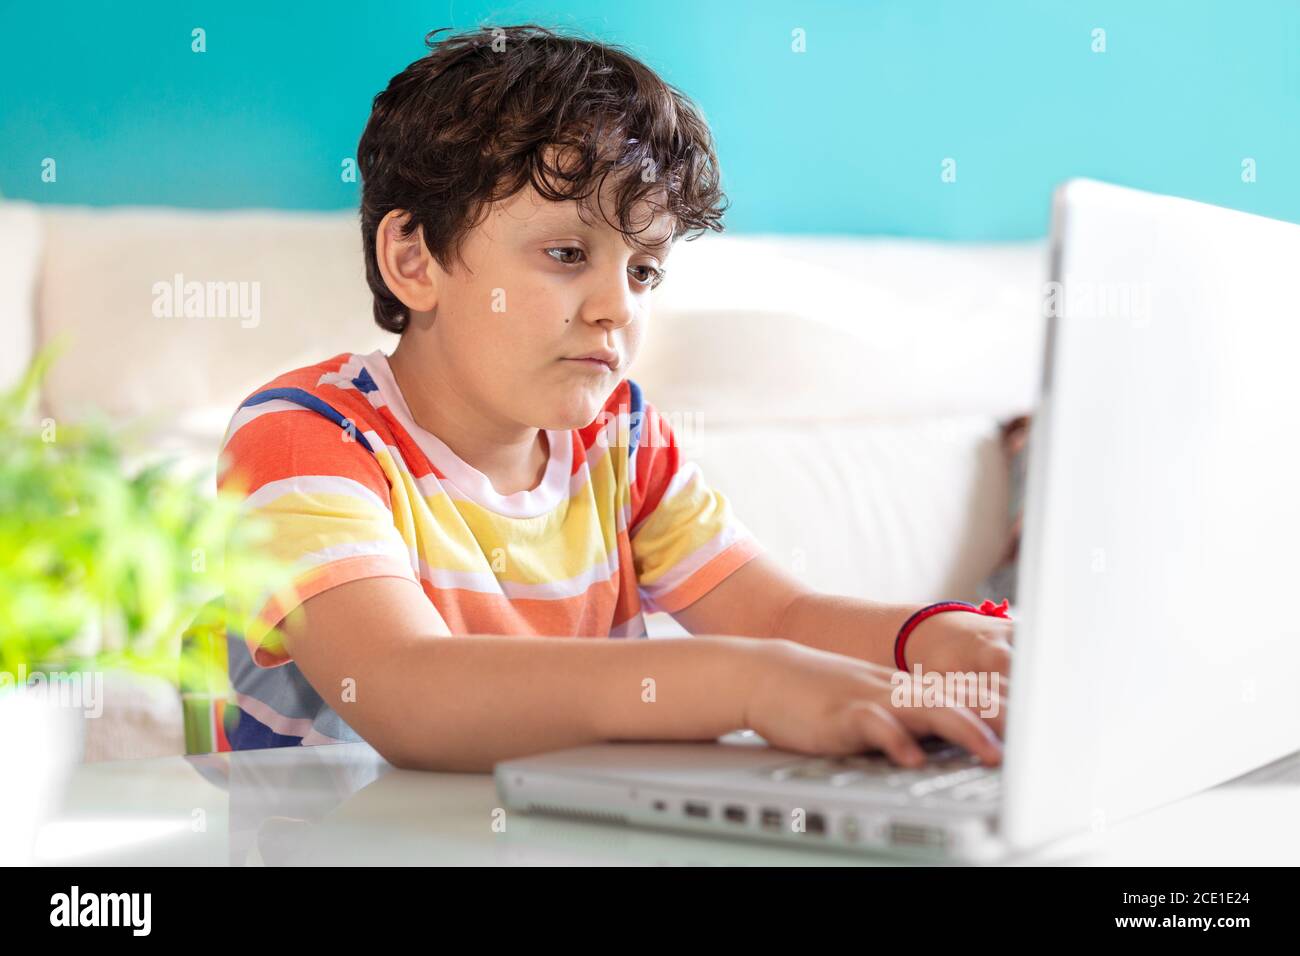 Petit garçon utilisant un ordinateur portable à la maison. Concept de technologie moderne et d'éducation en ligne. Banque D'Images